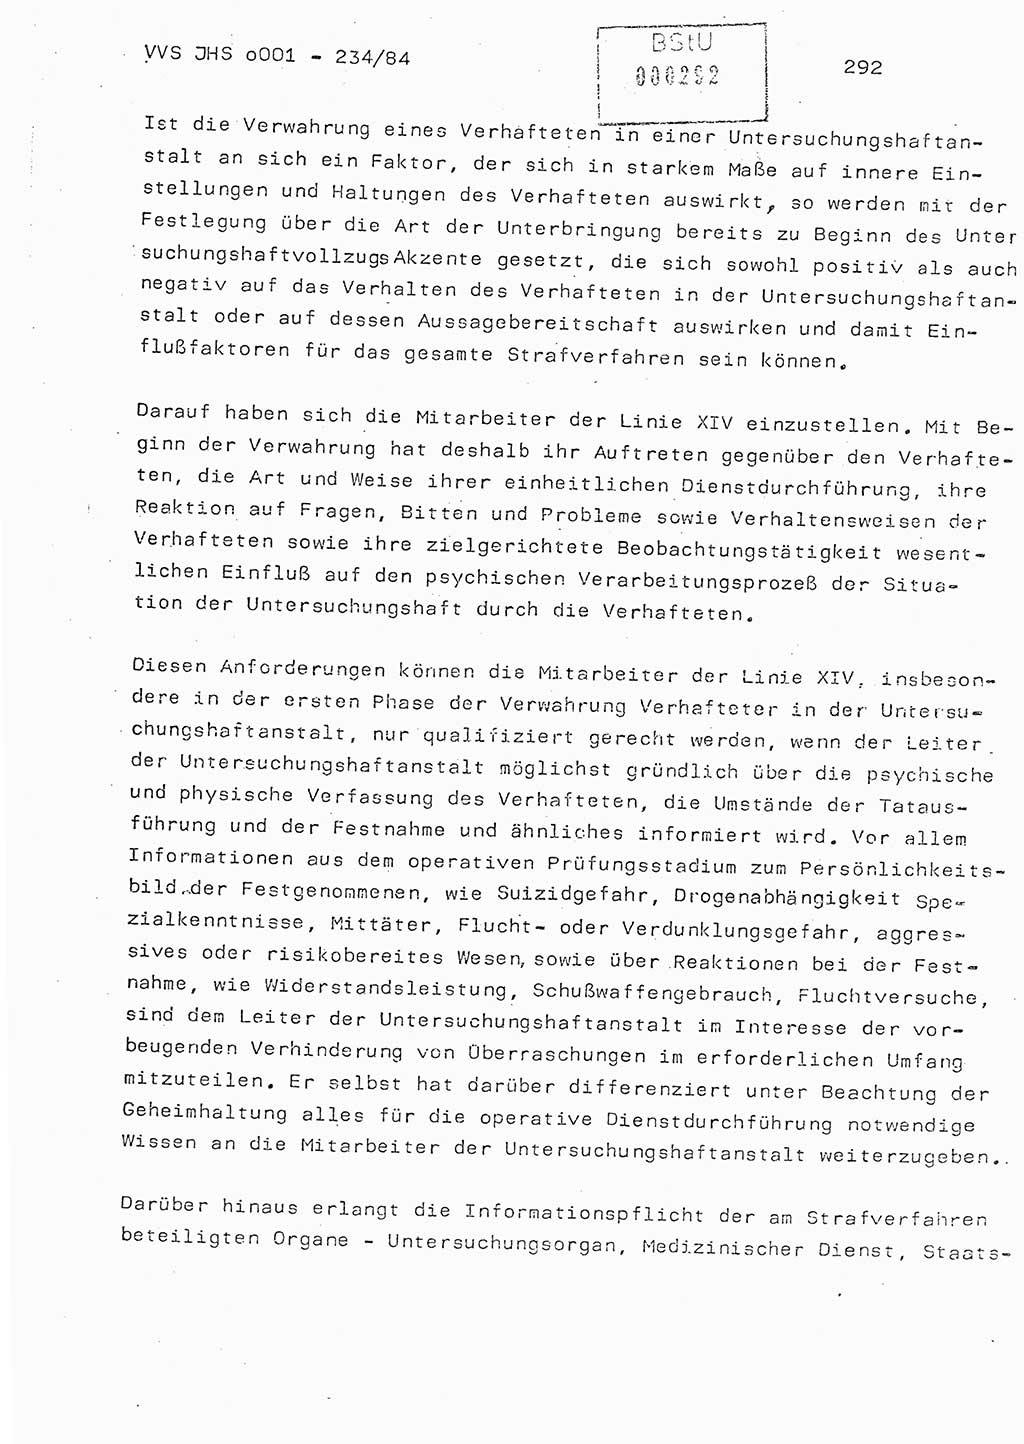 Dissertation Oberst Siegfried Rataizick (Abt. ⅩⅣ), Oberstleutnant Volkmar Heinz (Abt. ⅩⅣ), Oberstleutnant Werner Stein (HA Ⅸ), Hauptmann Heinz Conrad (JHS), Ministerium für Staatssicherheit (MfS) [Deutsche Demokratische Republik (DDR)], Juristische Hochschule (JHS), Vertrauliche Verschlußsache (VVS) o001-234/84, Potsdam 1984, Seite 292 (Diss. MfS DDR JHS VVS o001-234/84 1984, S. 292)